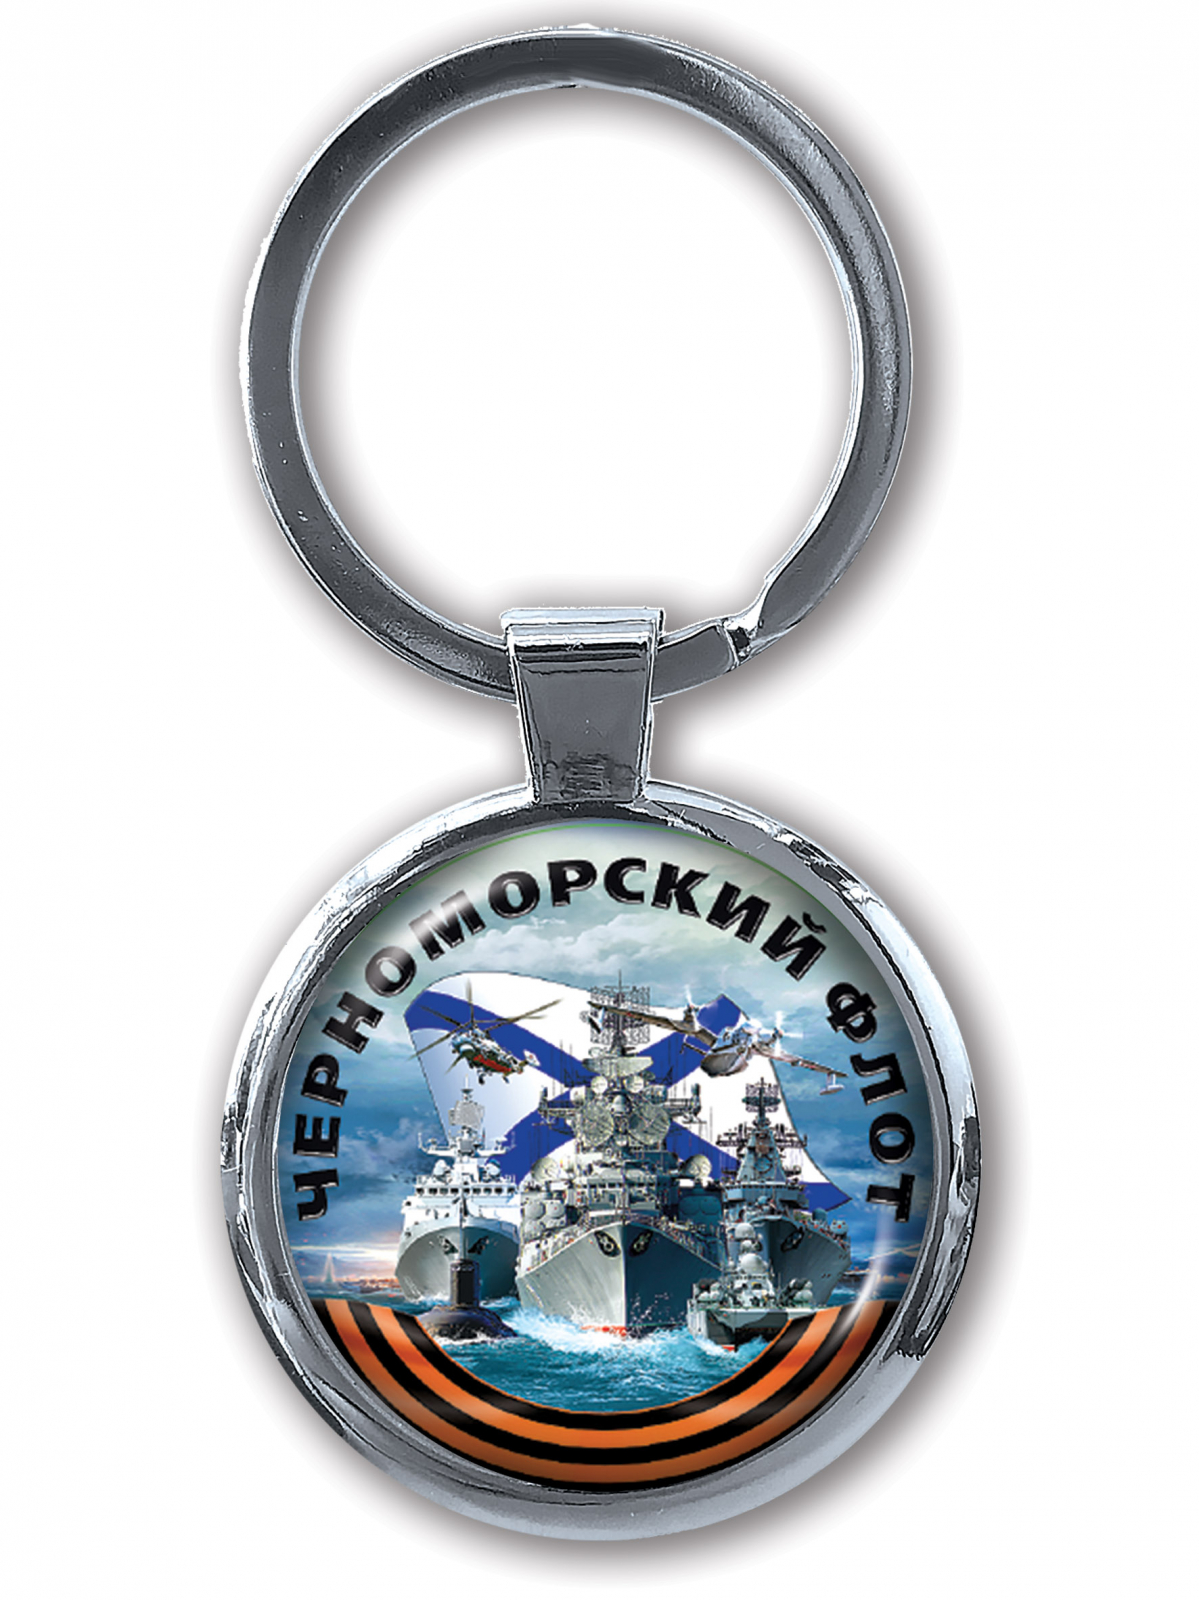 Сувенирный брелок "Черноморский флот" для автоключа 